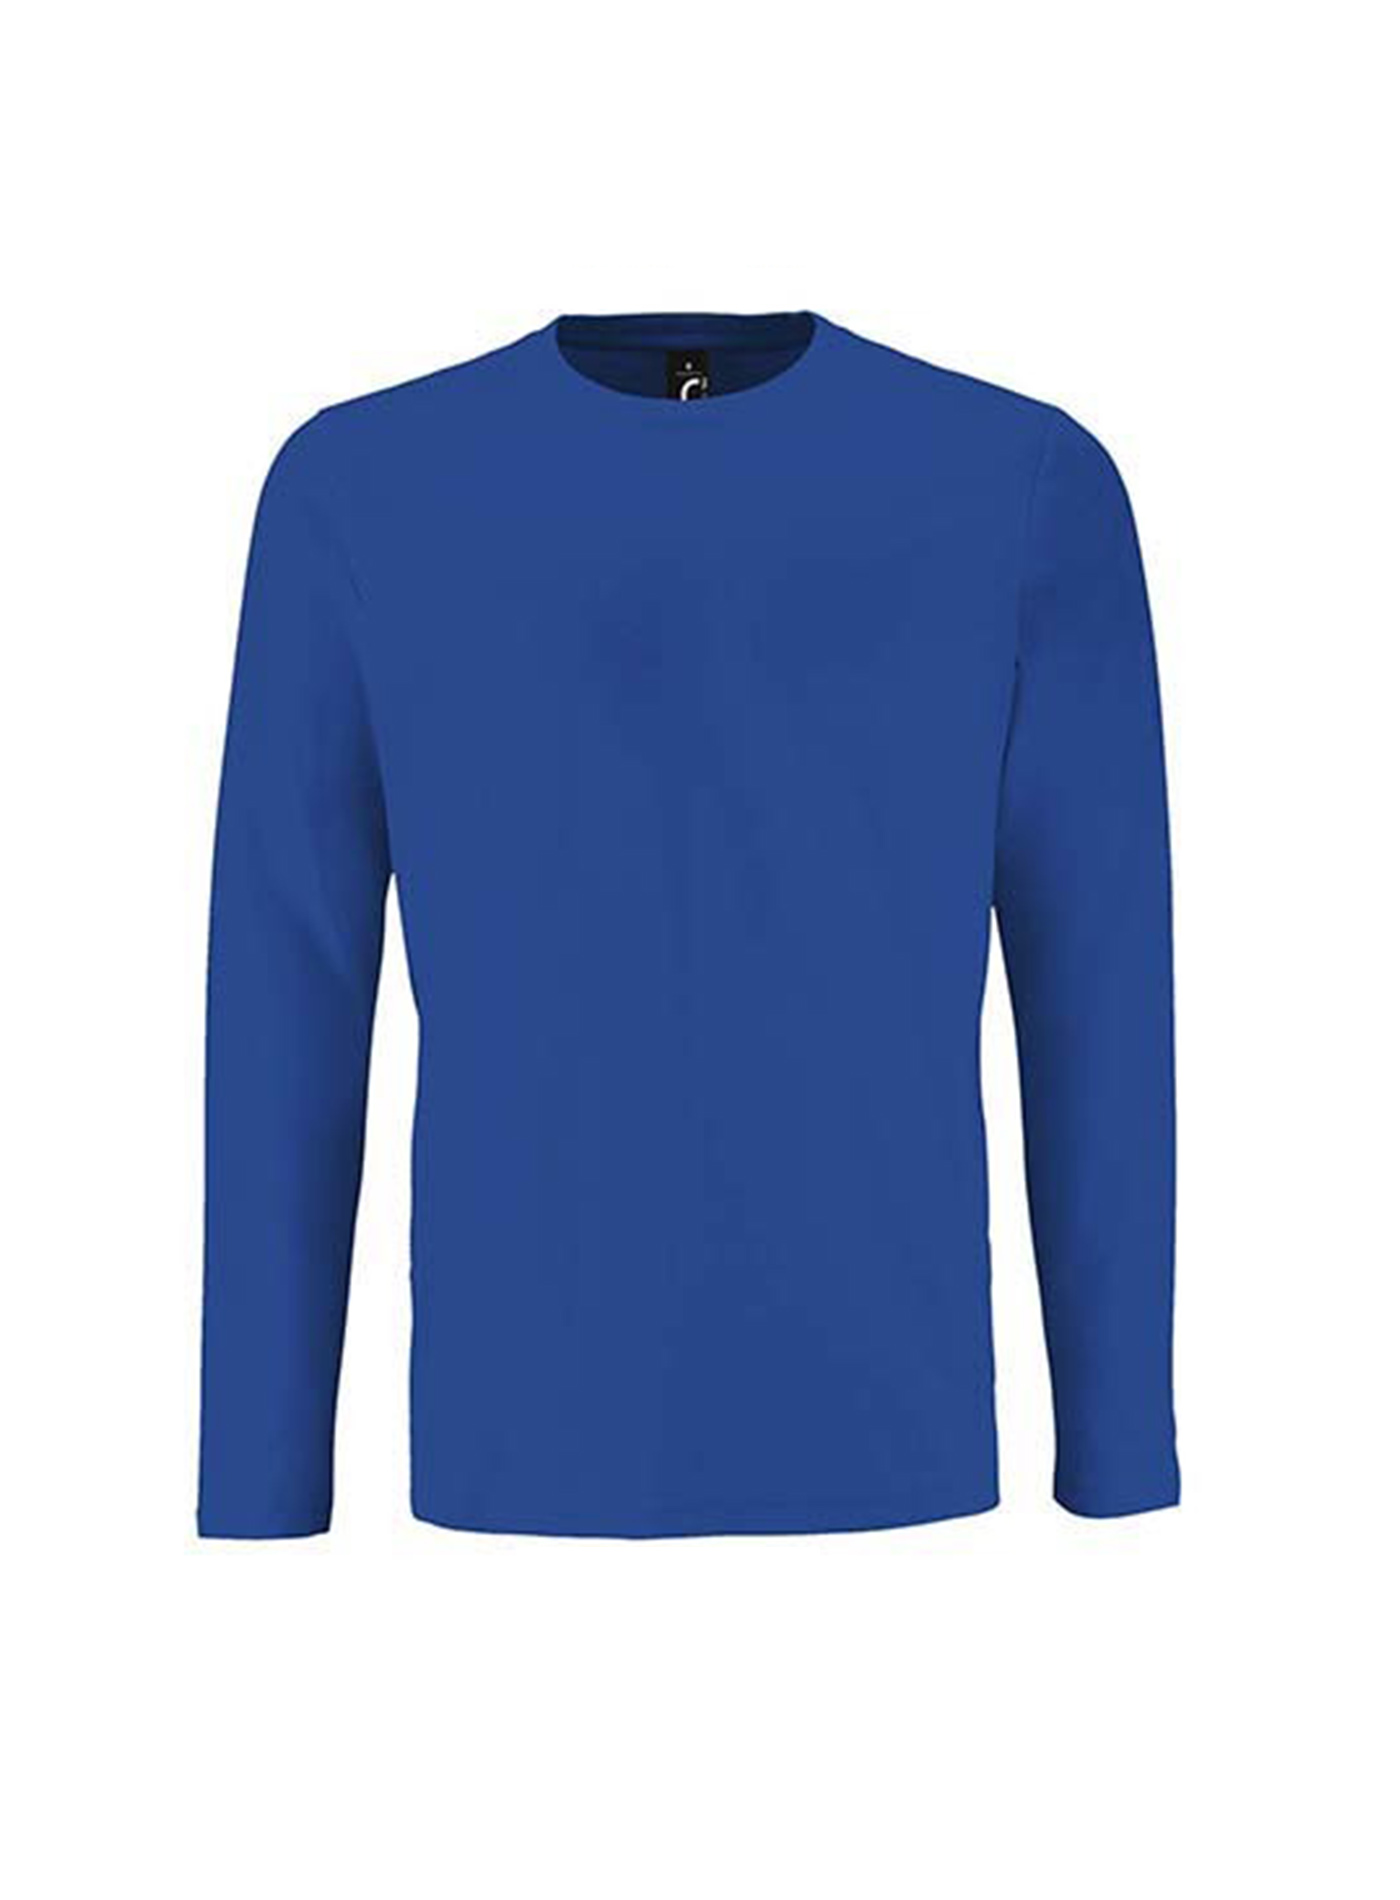 Pánské tričko s dlouhým rukávem SOL´S Imperial - Královská modrá L